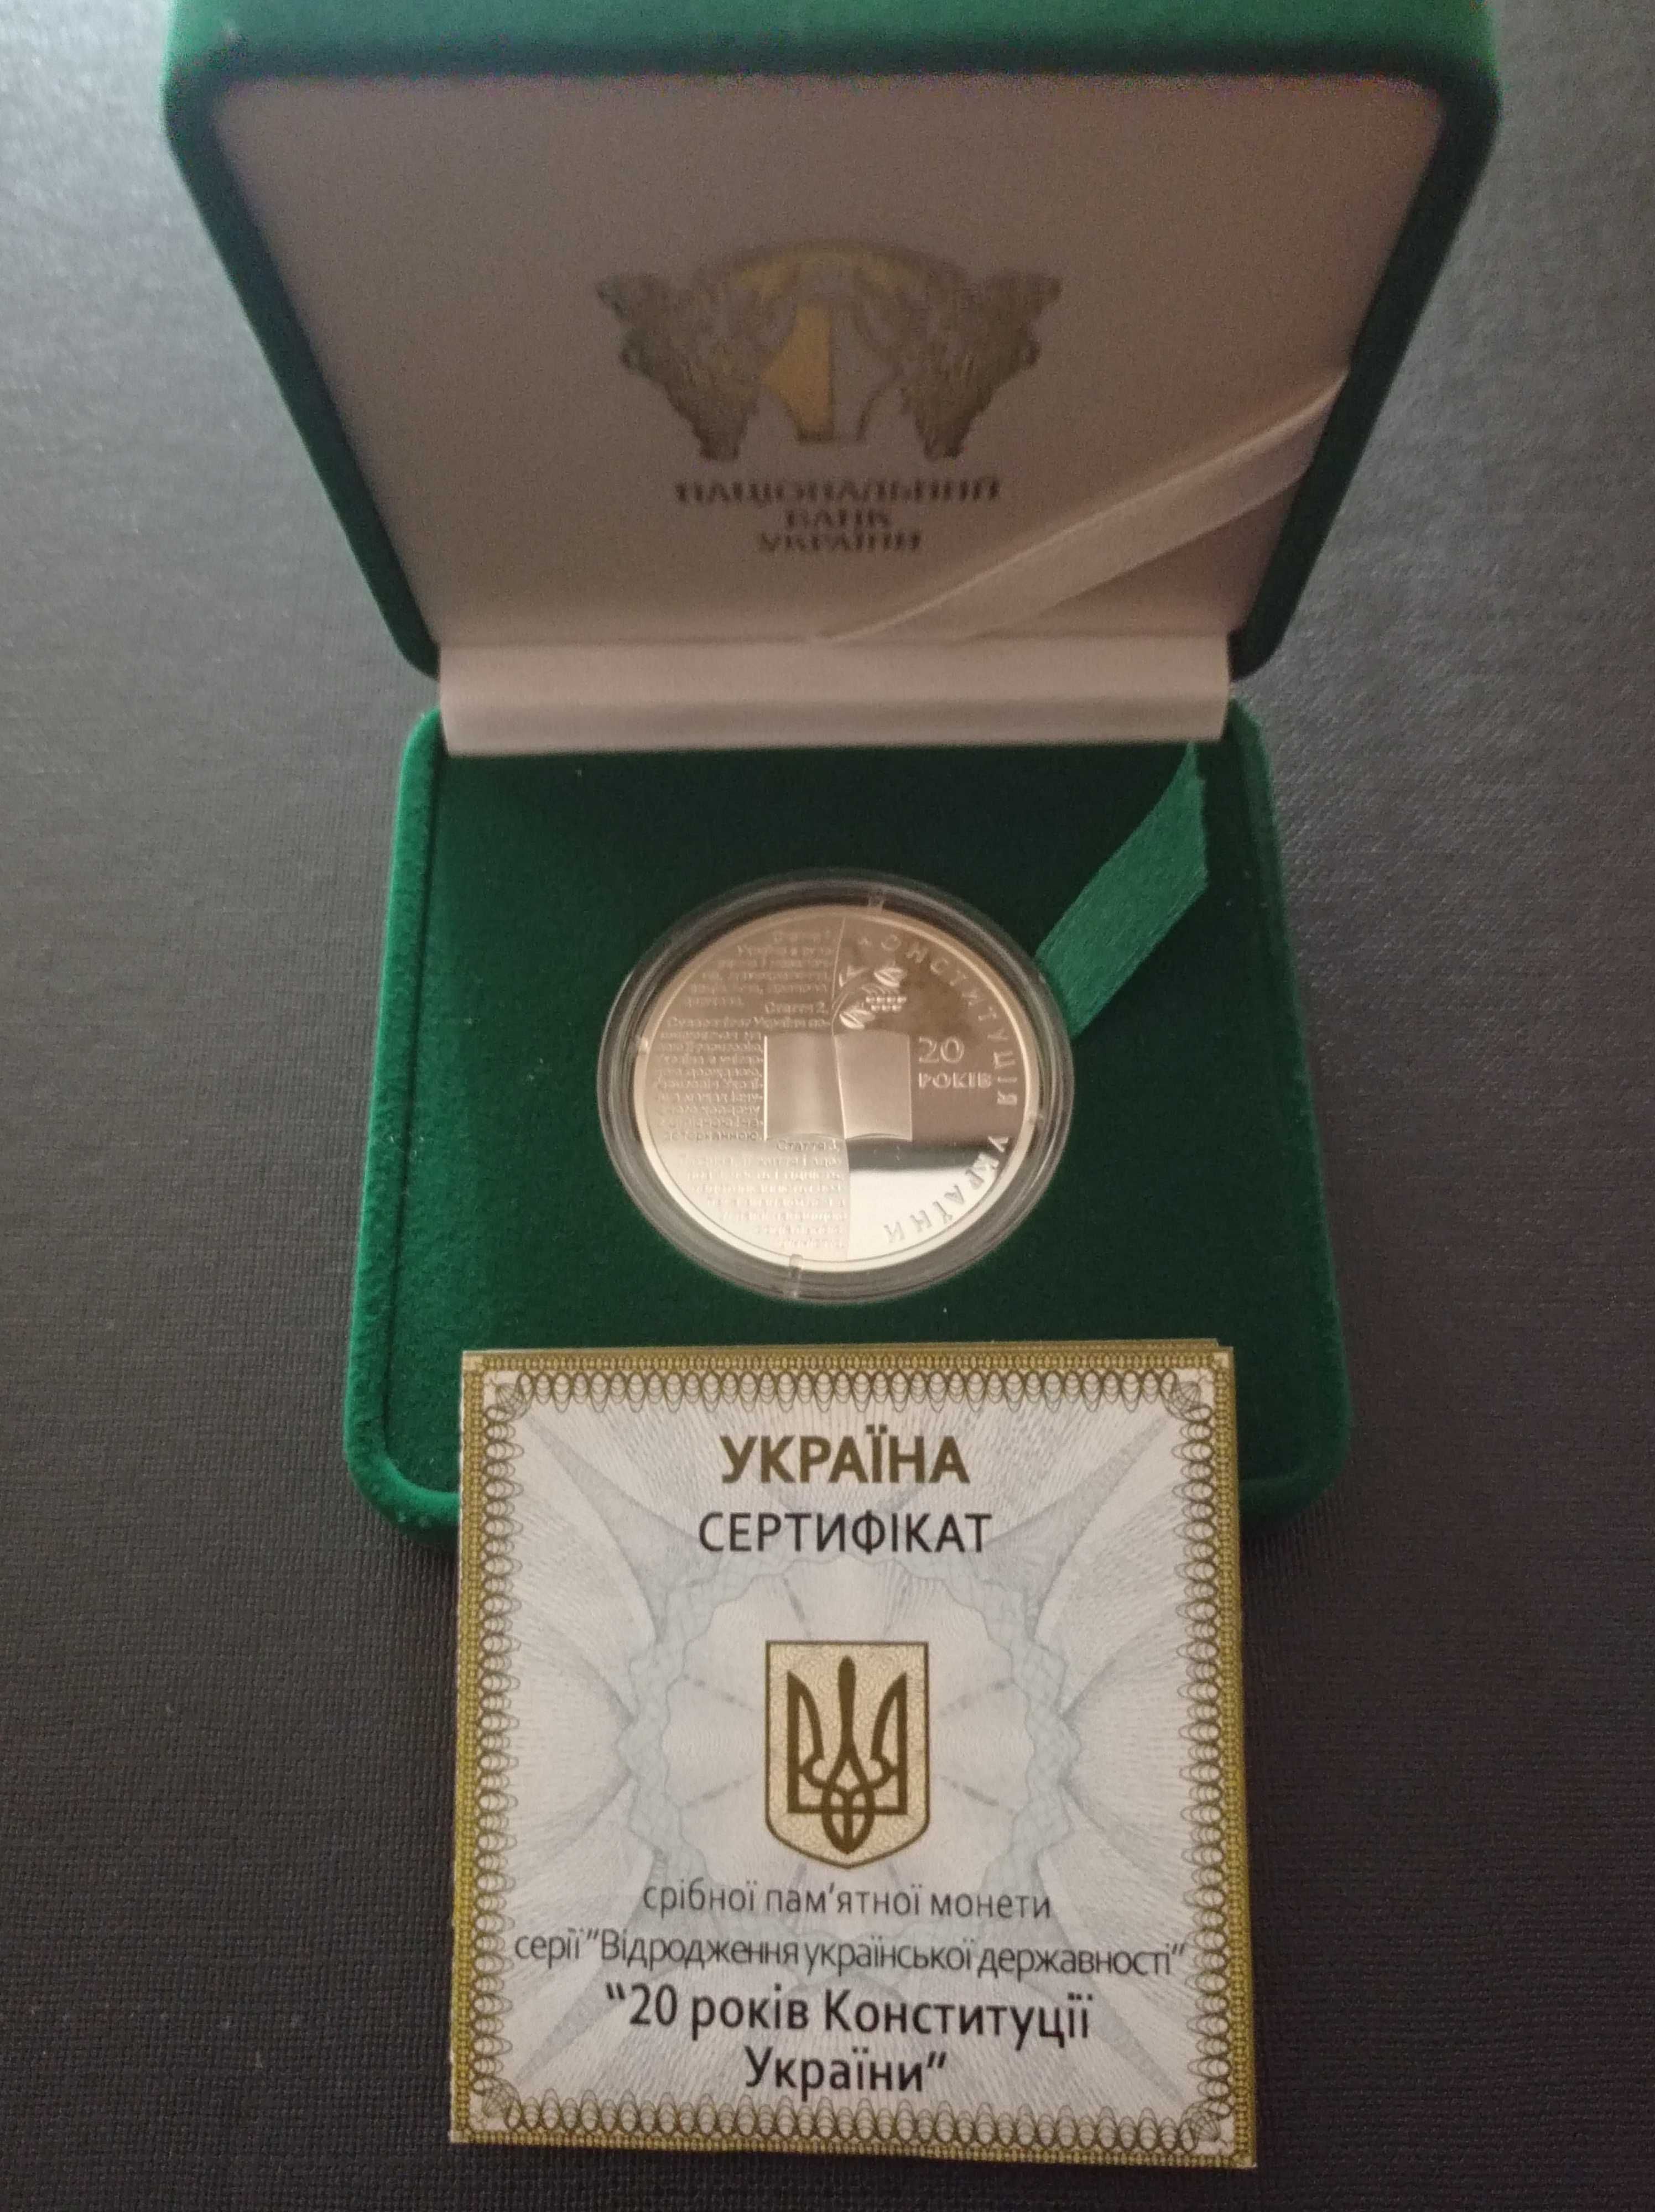 Ой у лузі червона калина.Срібна монета України 10 грн.2022 рік.НБУ.